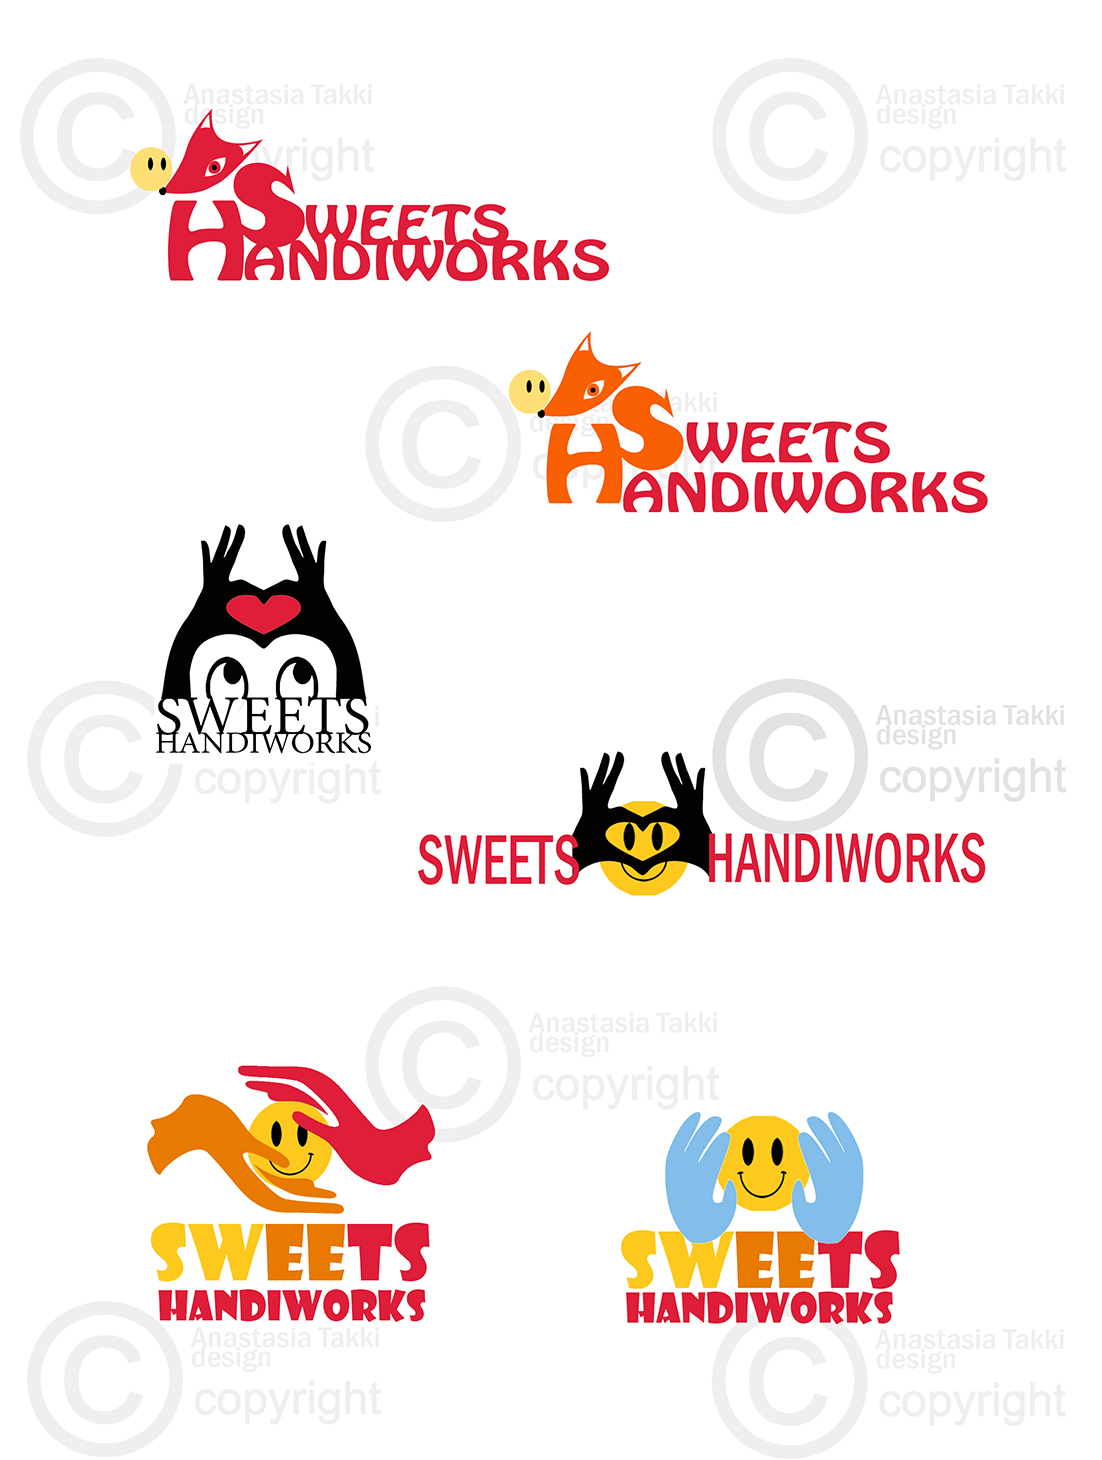 Sweethandiworks logo3 2